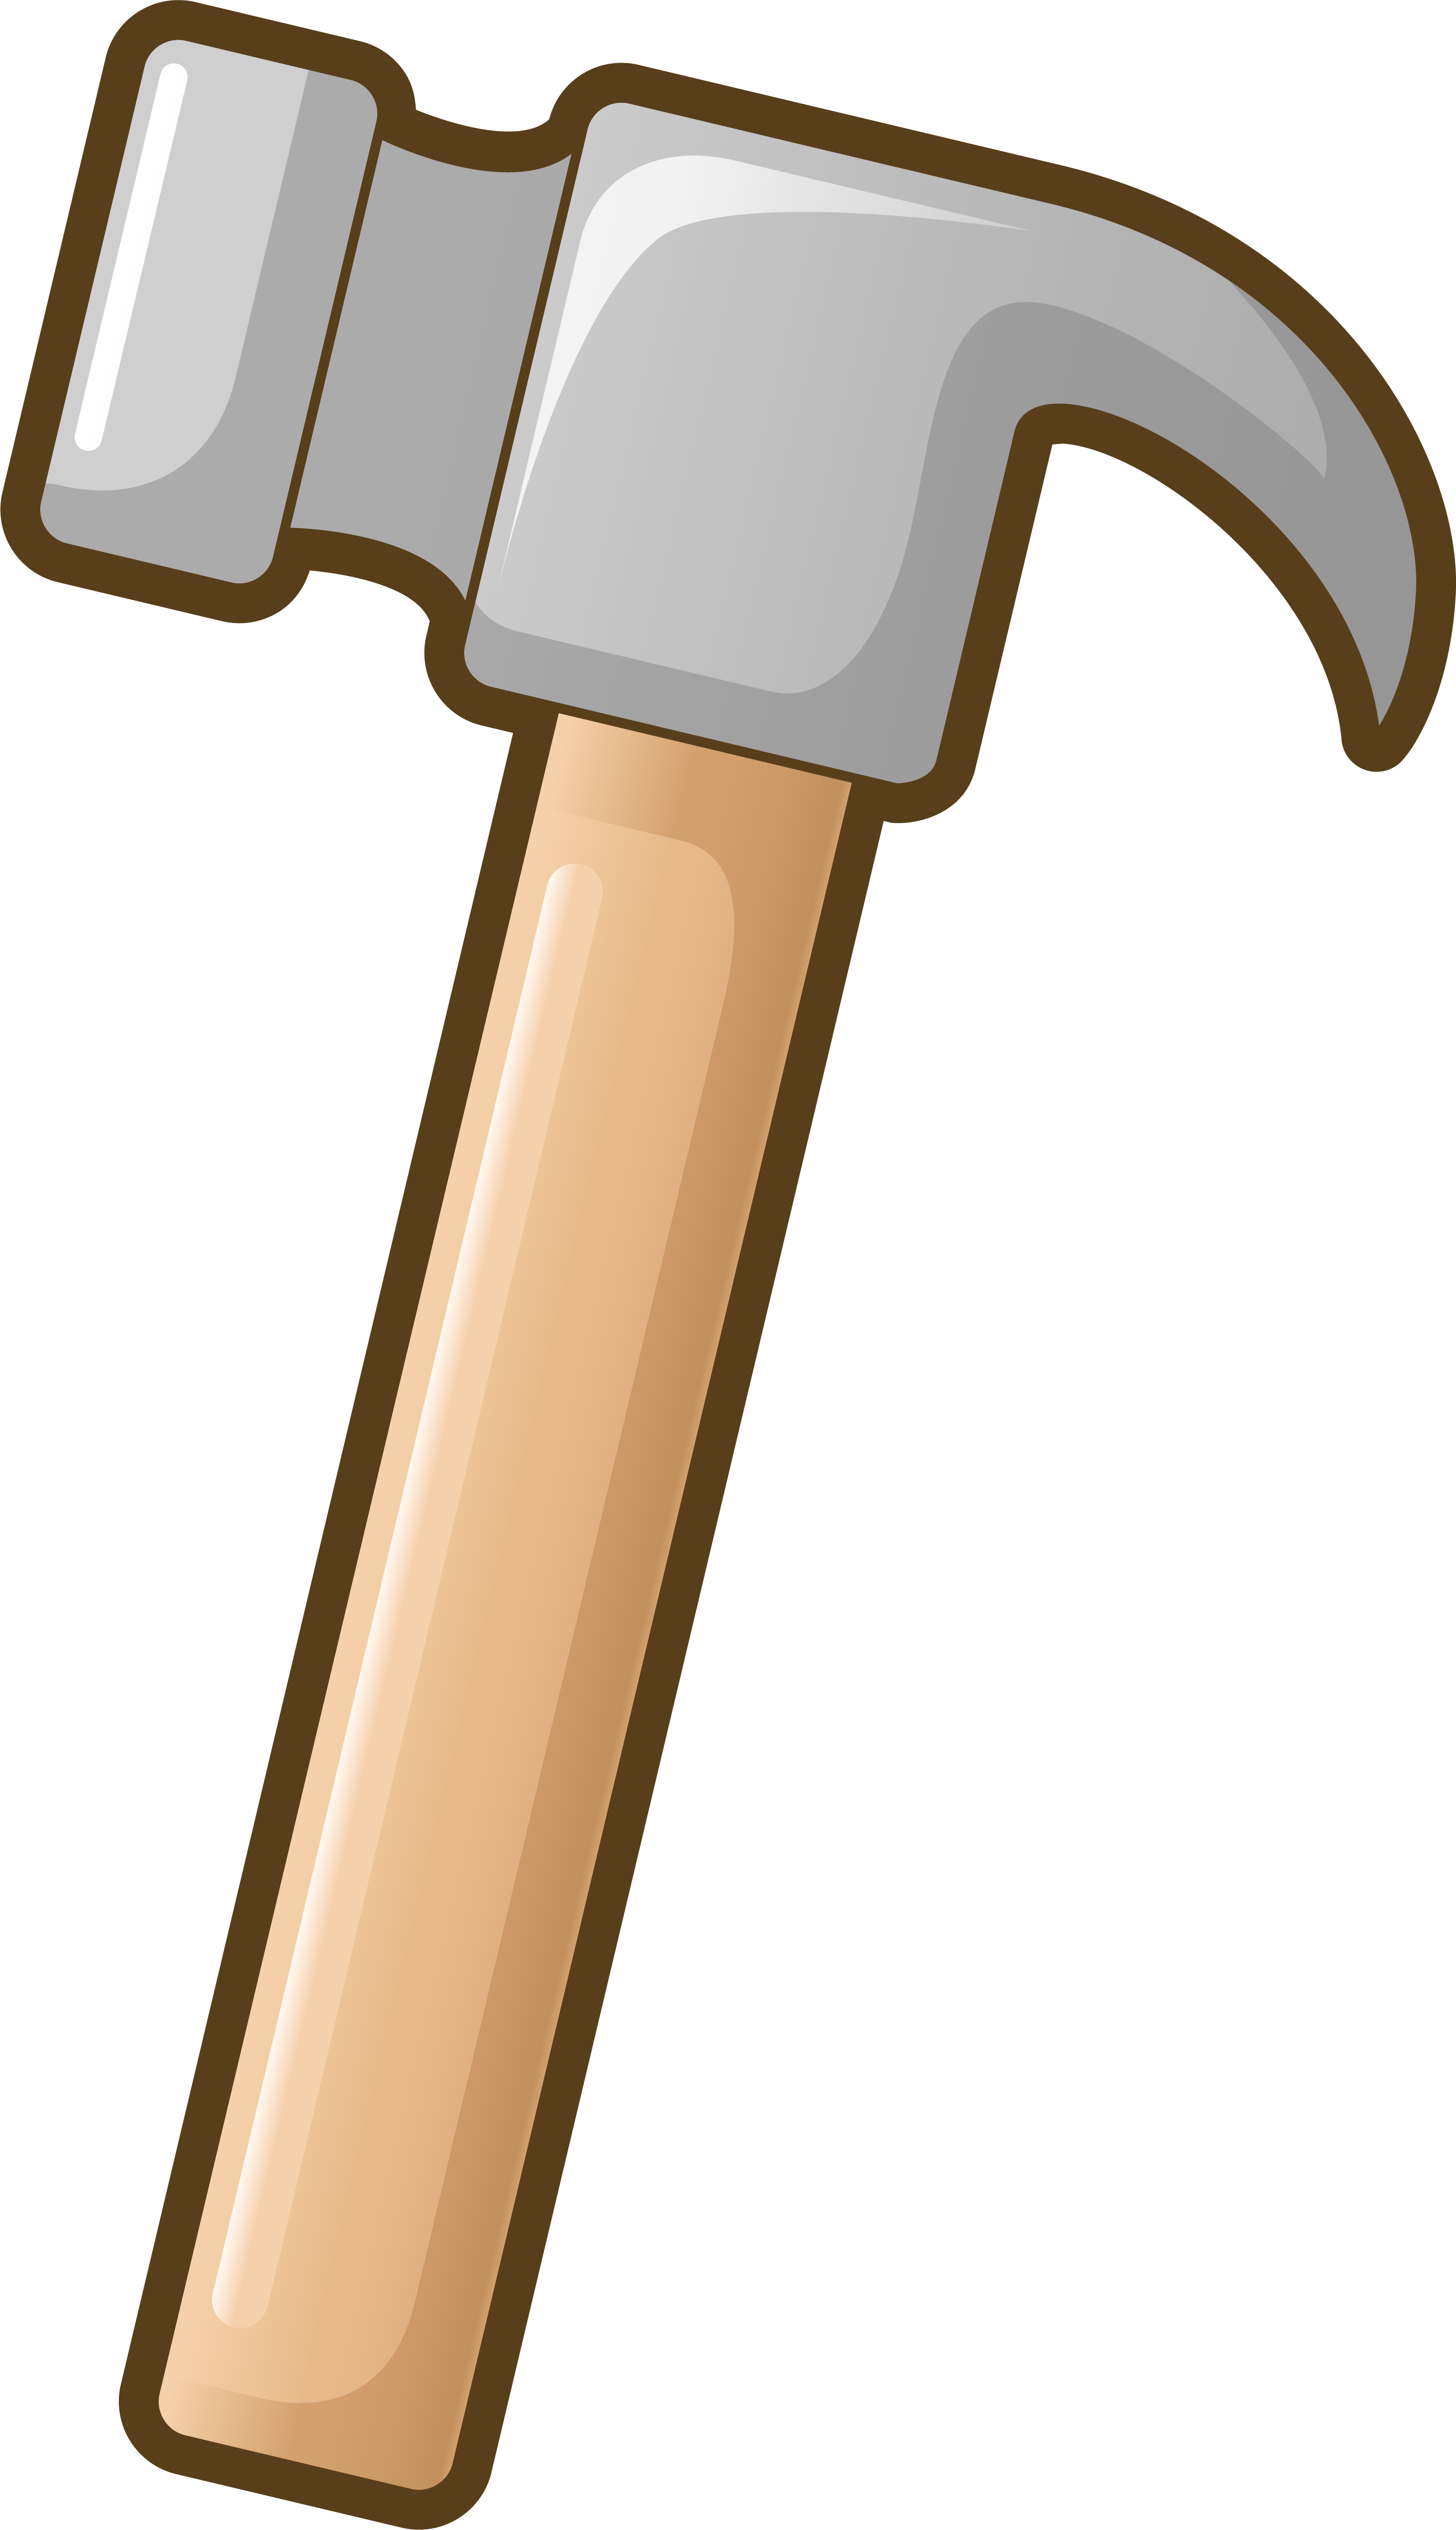 Hammer Tool Cartoon